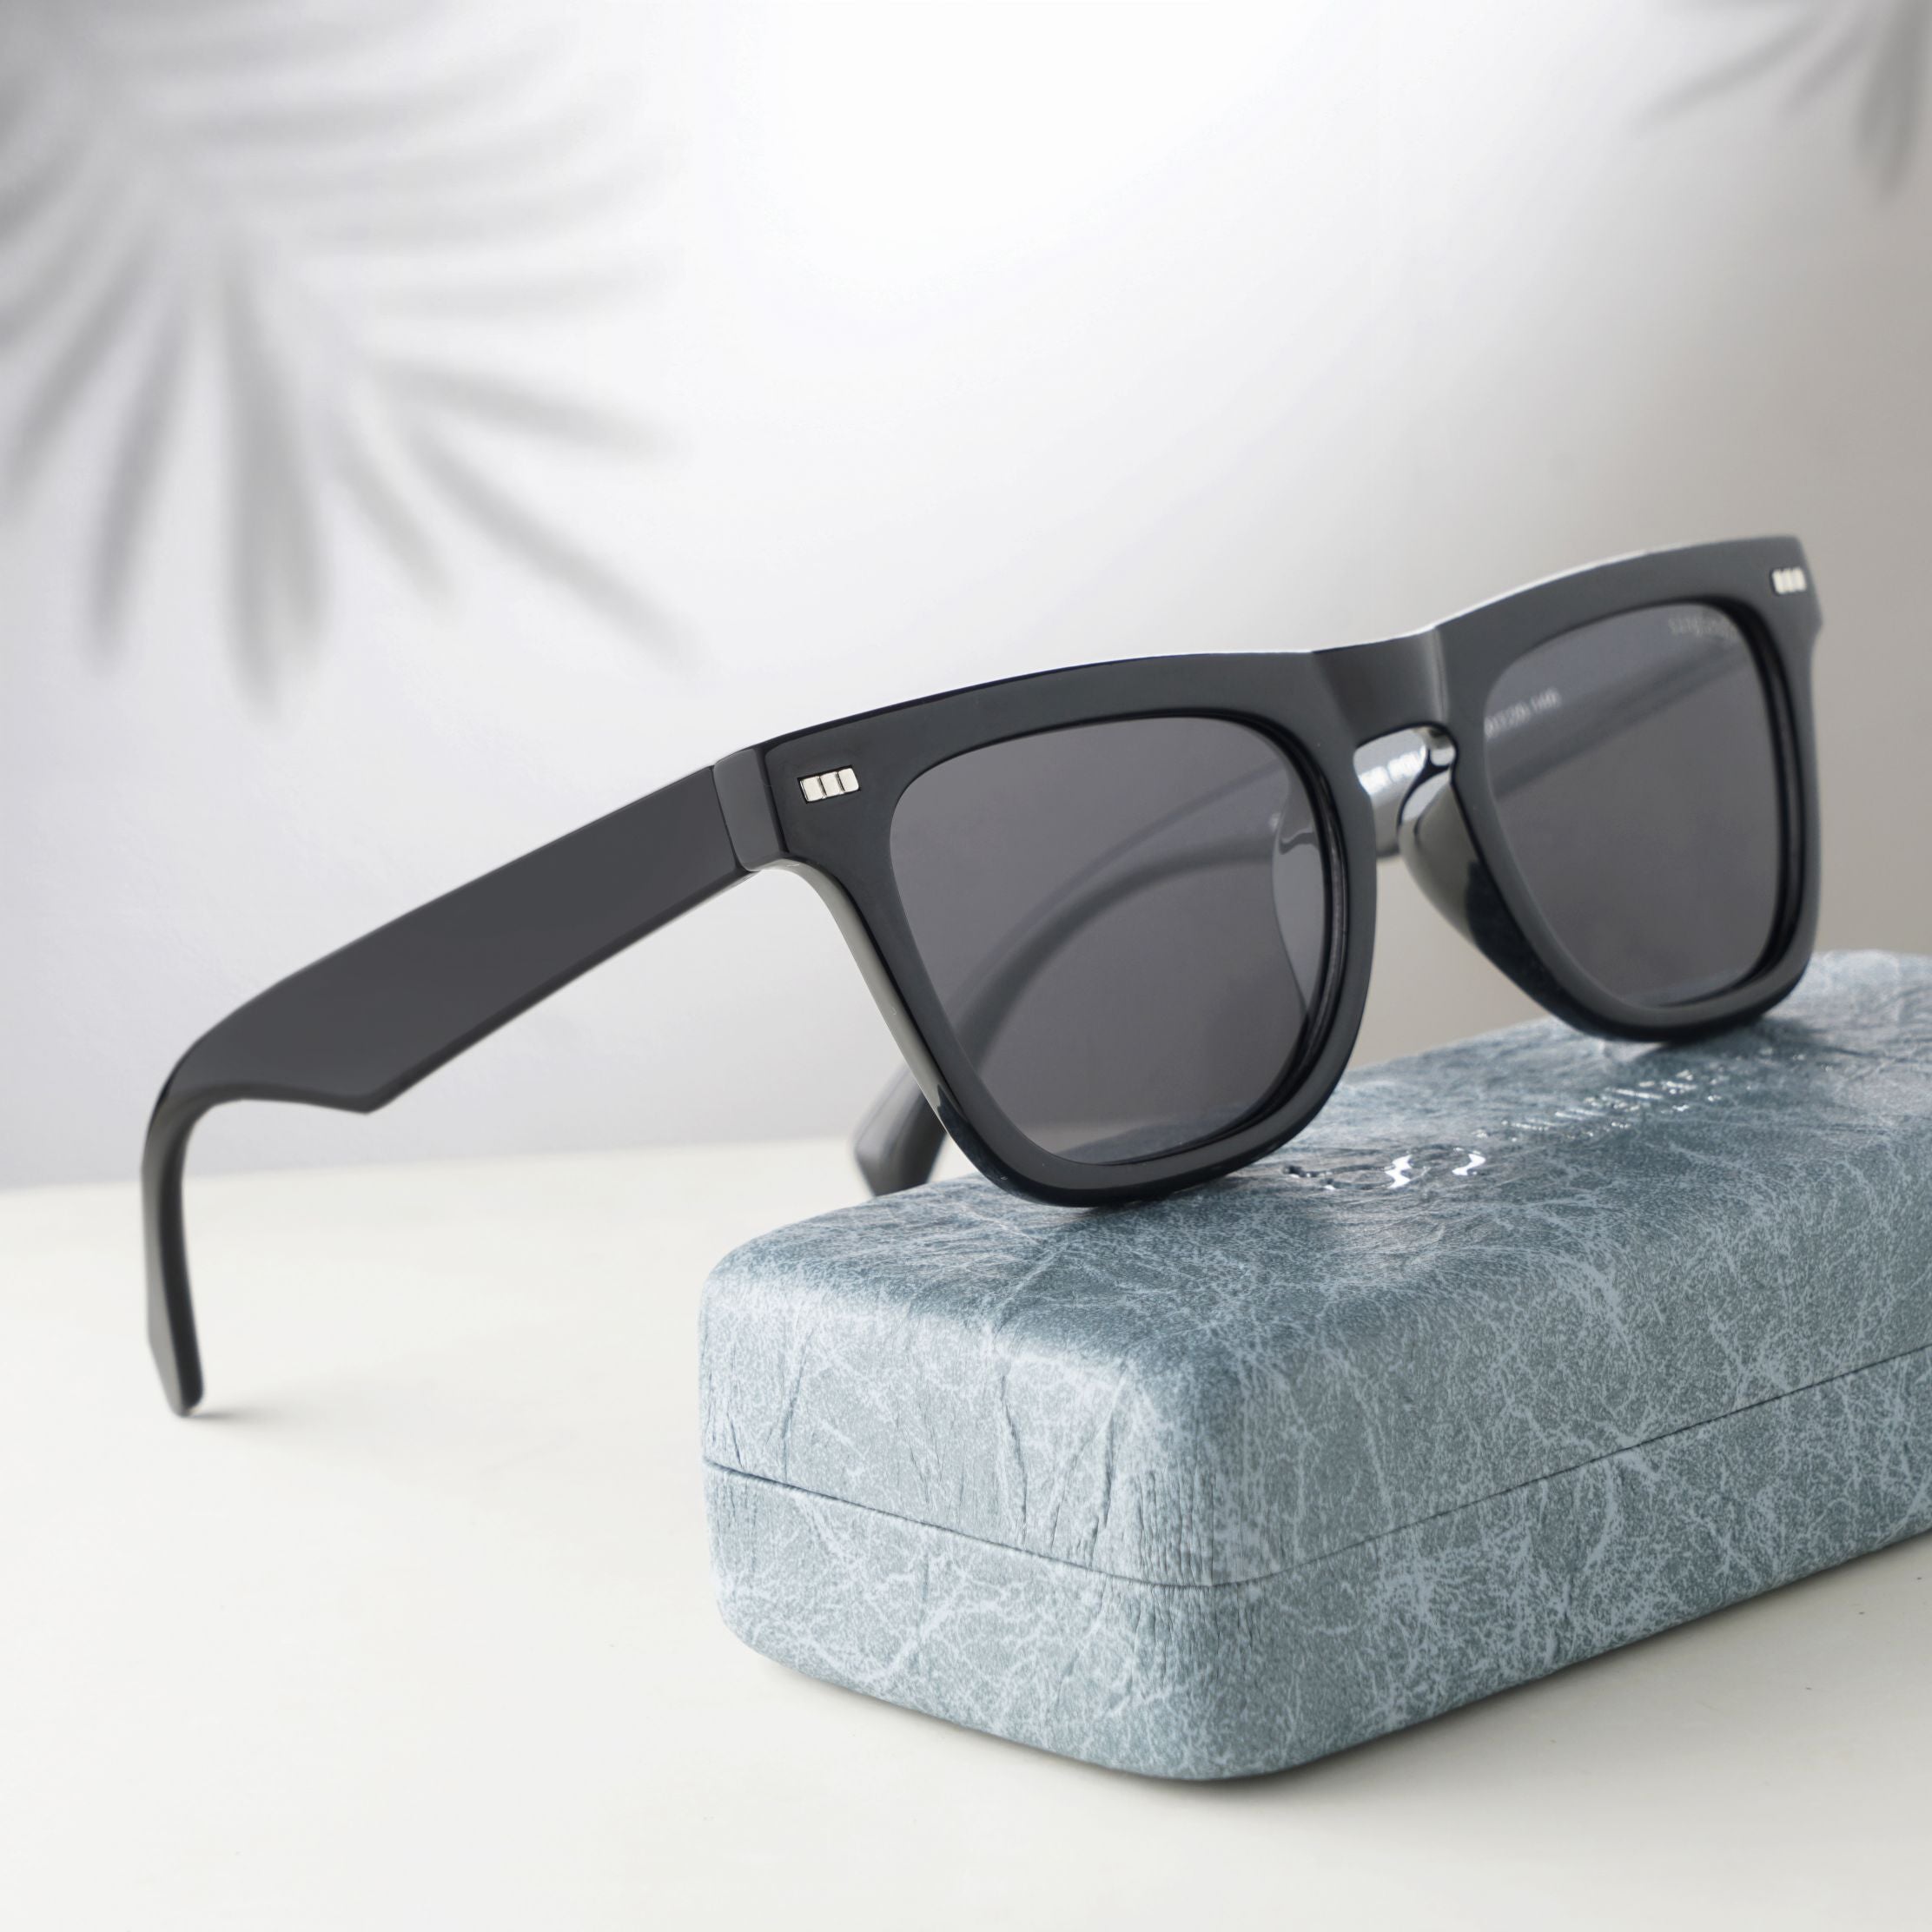 Peter Polarized Black Square Sunglasses